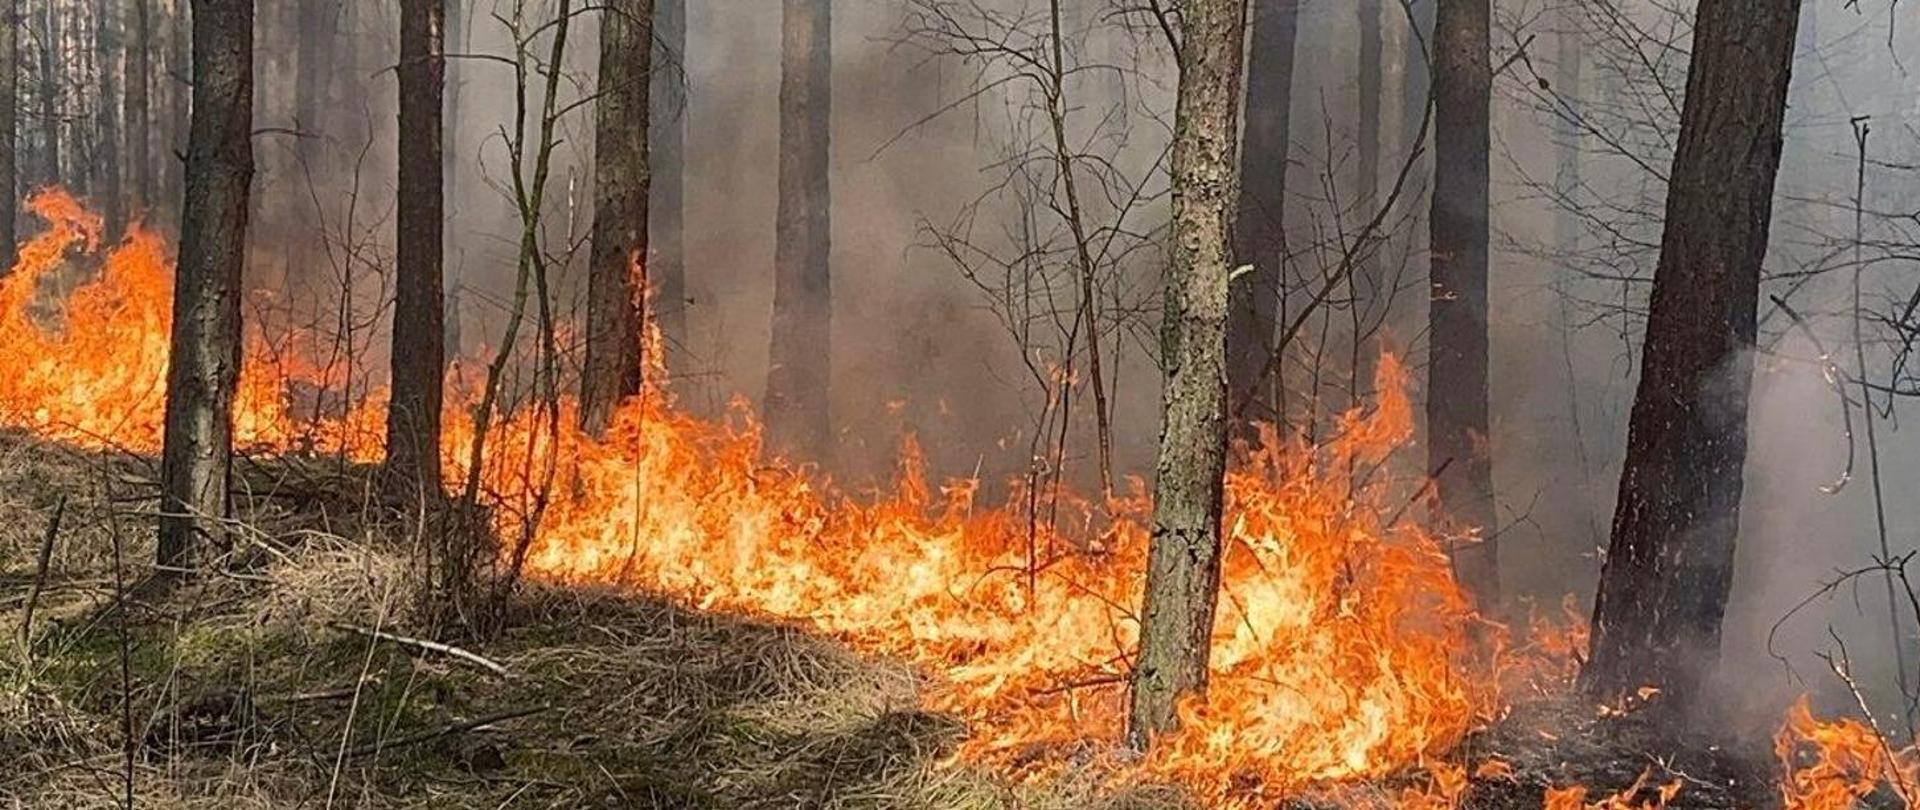 Las, w którym pali się ściółka leśna widać płomienie między drzewami i unoszący się dym